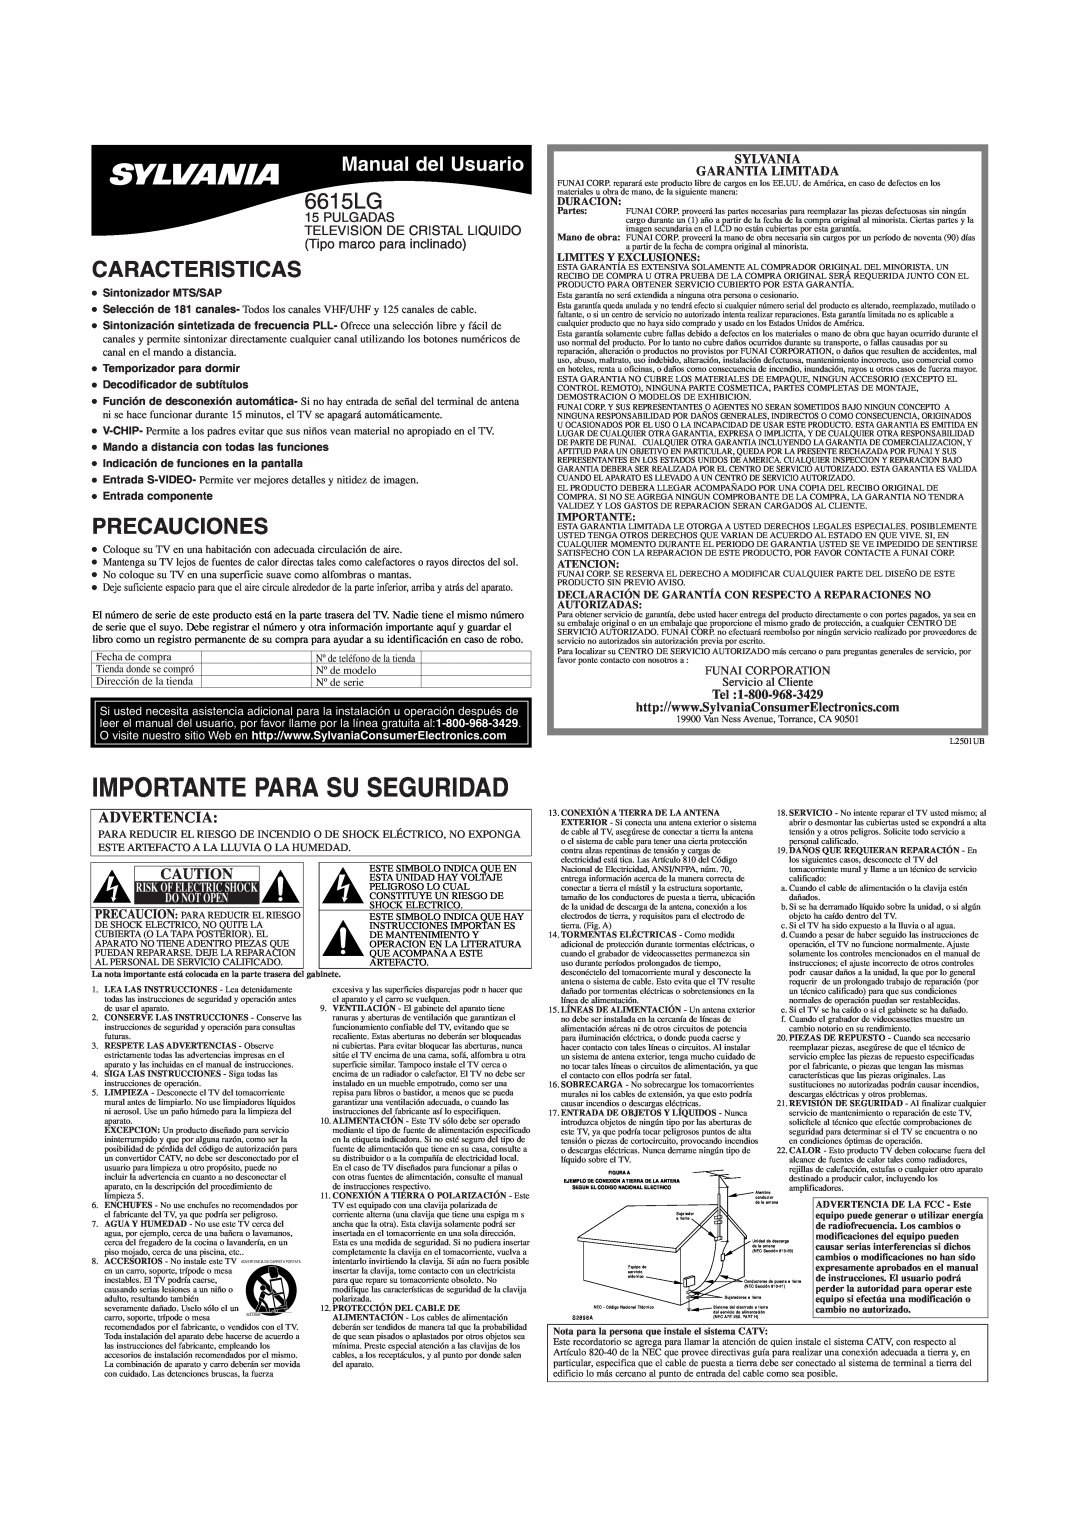 Sylvania 6615LG Caracteristicas, Precauciones, Manual del Usuario, Sylvania Garantia Limitada, Duracion, Importante 